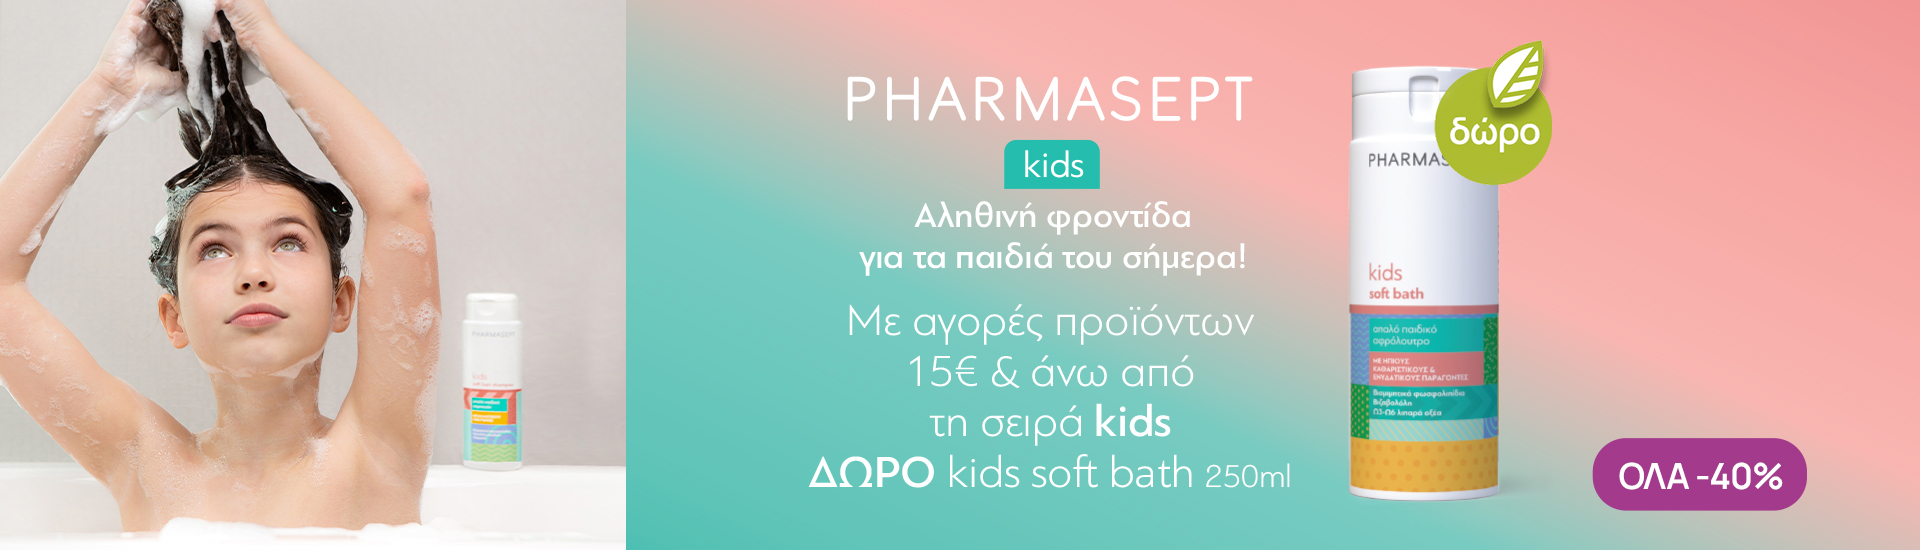 Pharmasept Kids Με -40% & ΔΩΡΟ Παιδικό Αφρόλουτρο!